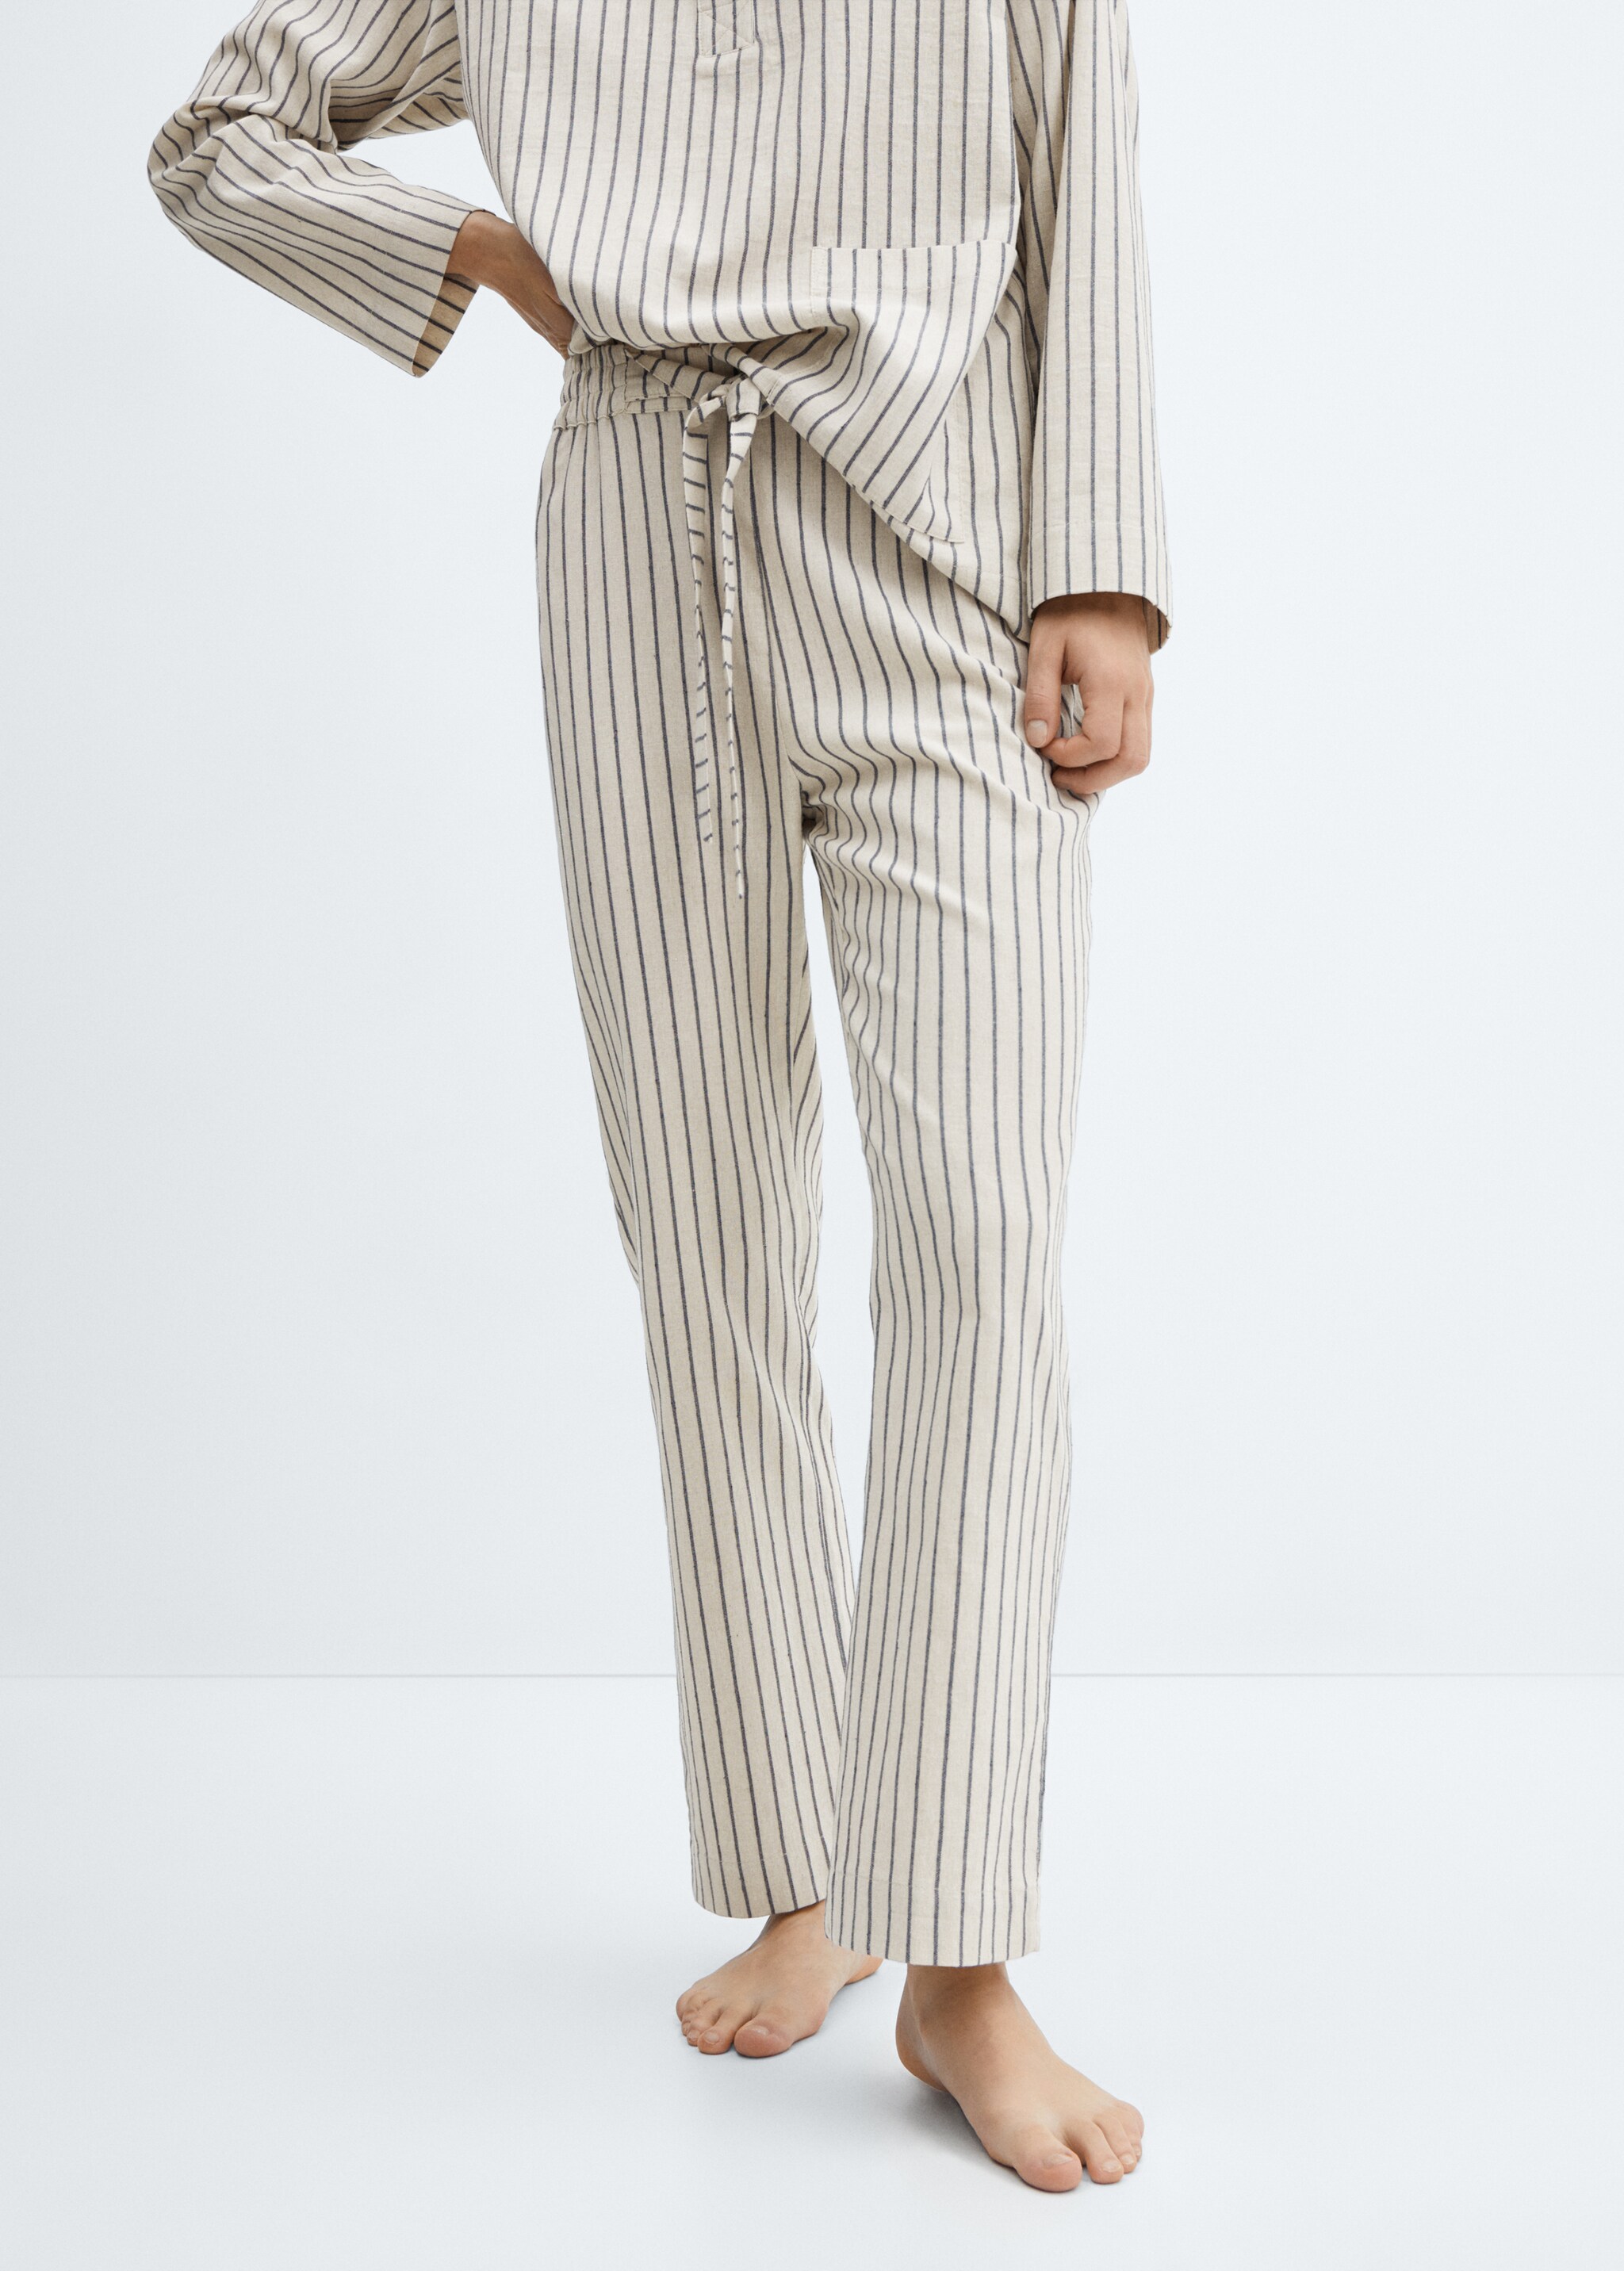 Striped pajama trousers - Medium plane